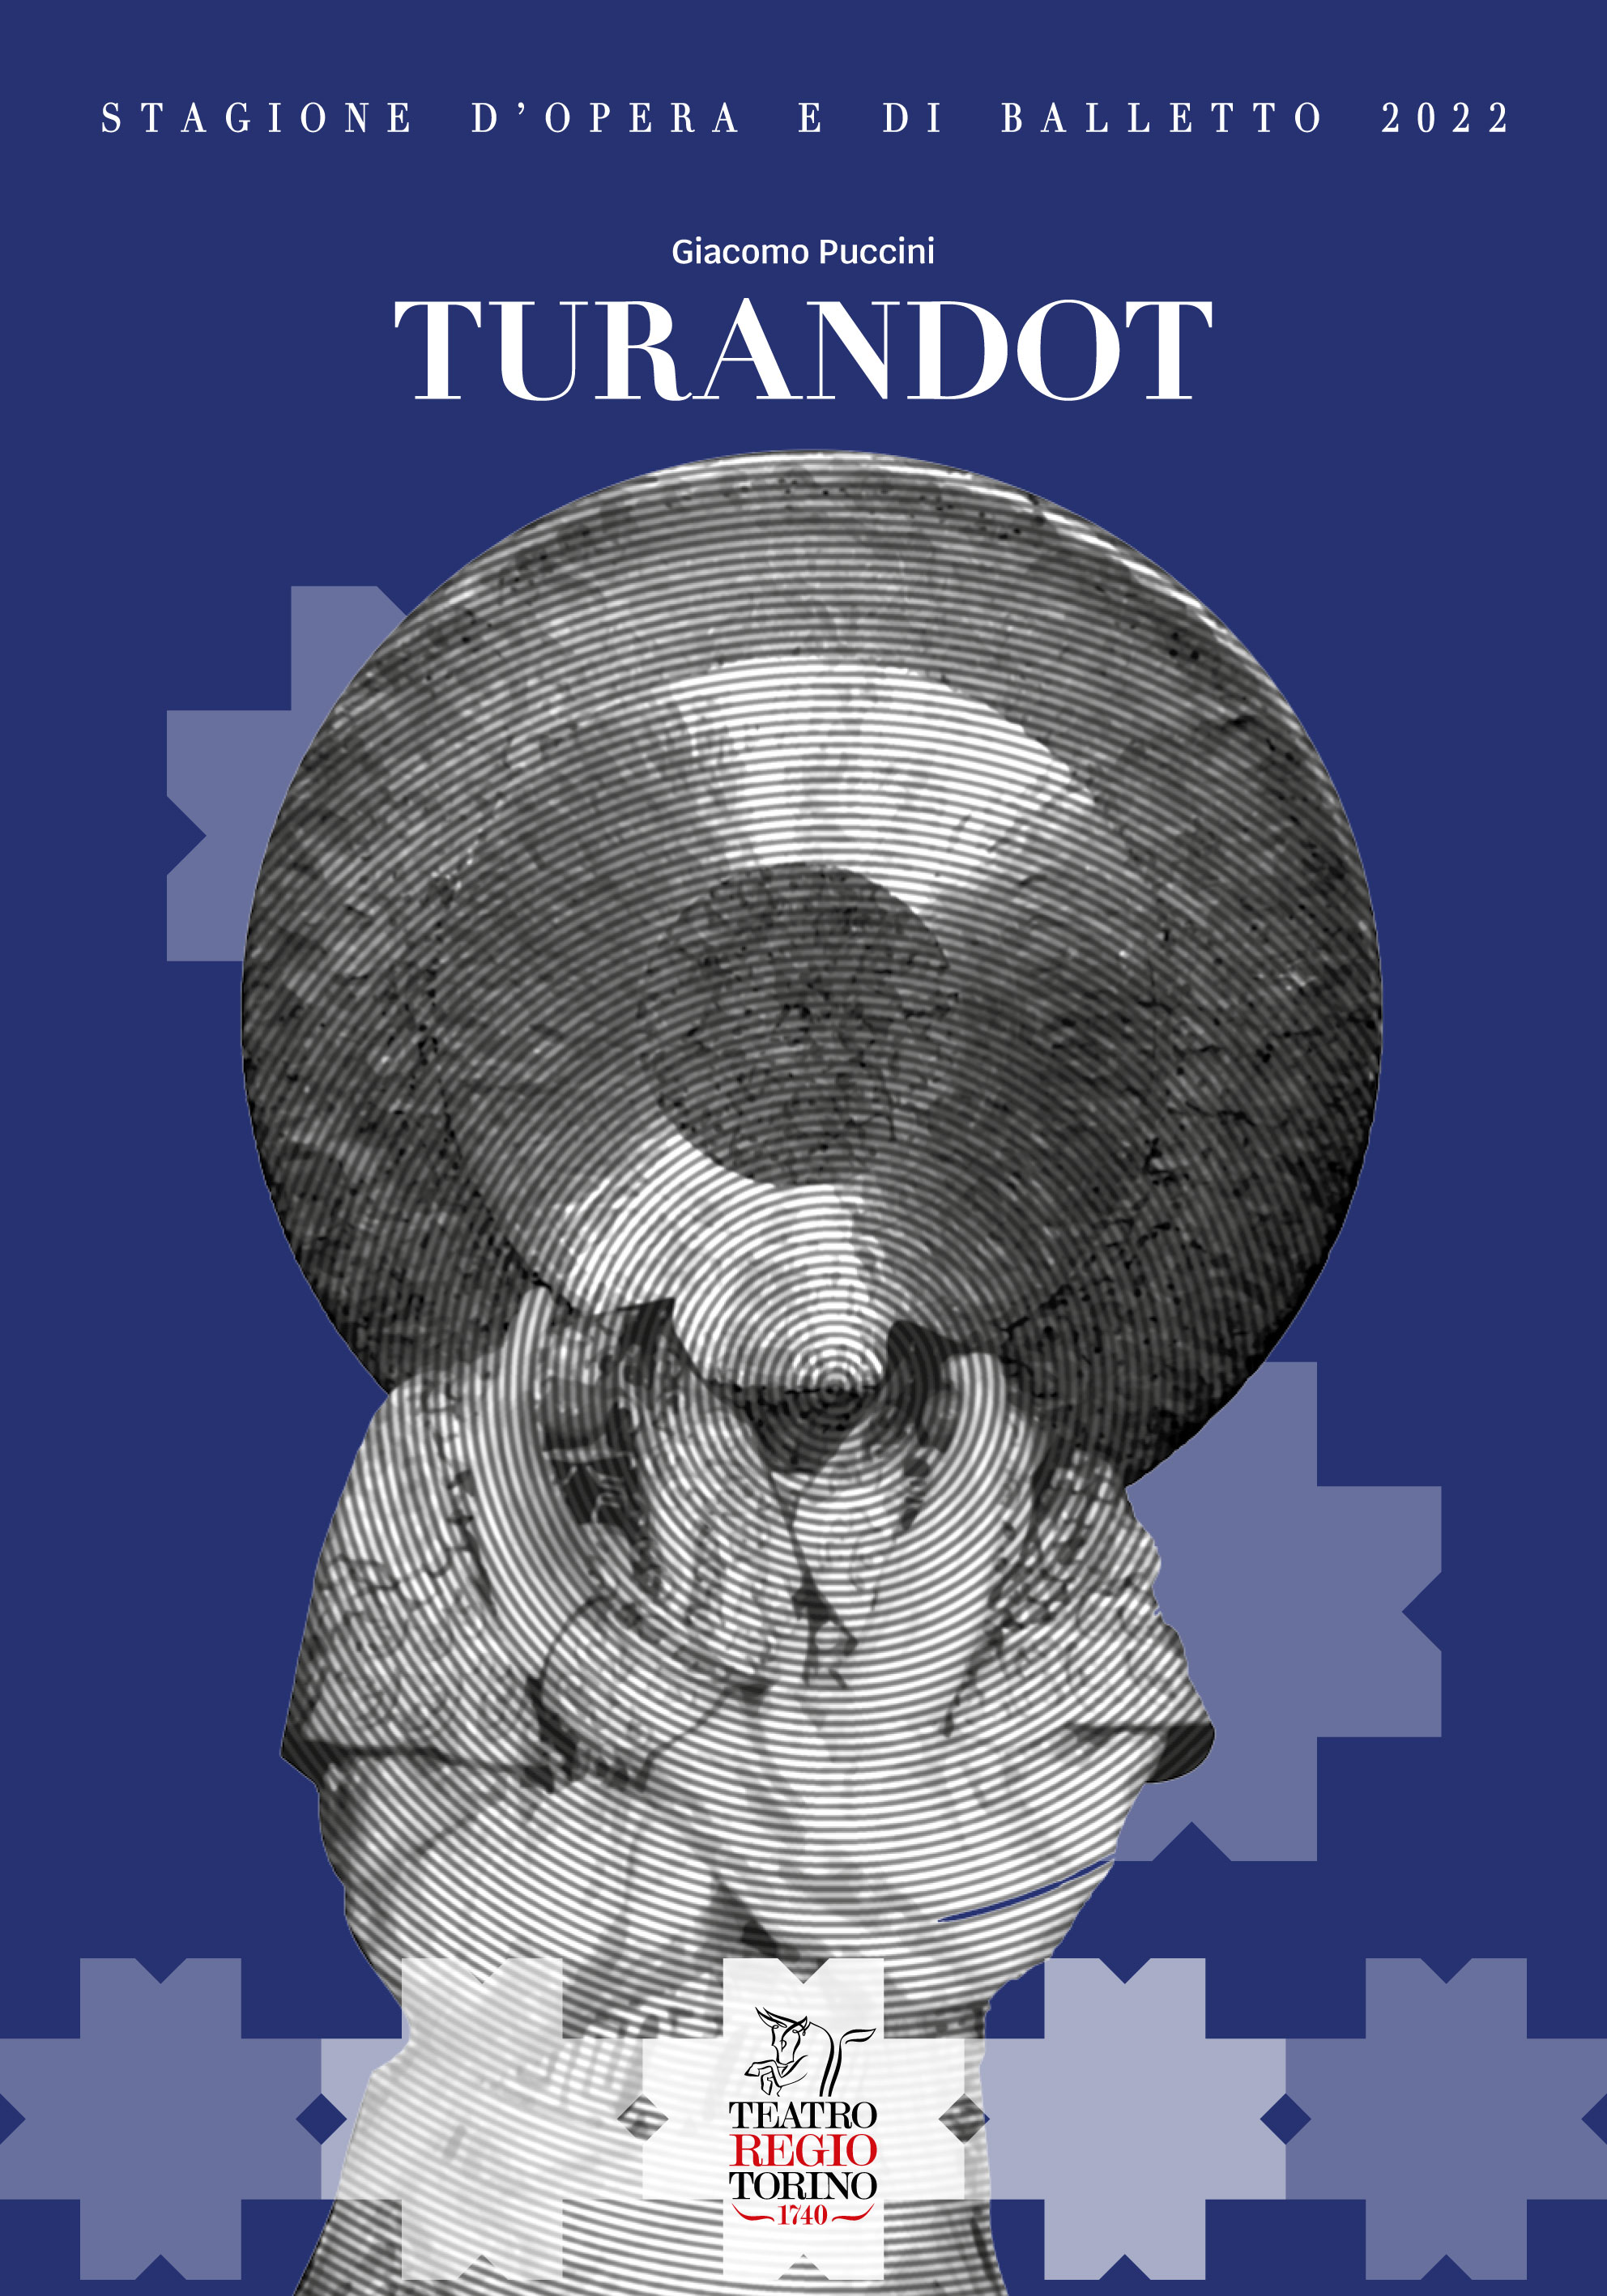 Copertina per il volume su Turandot